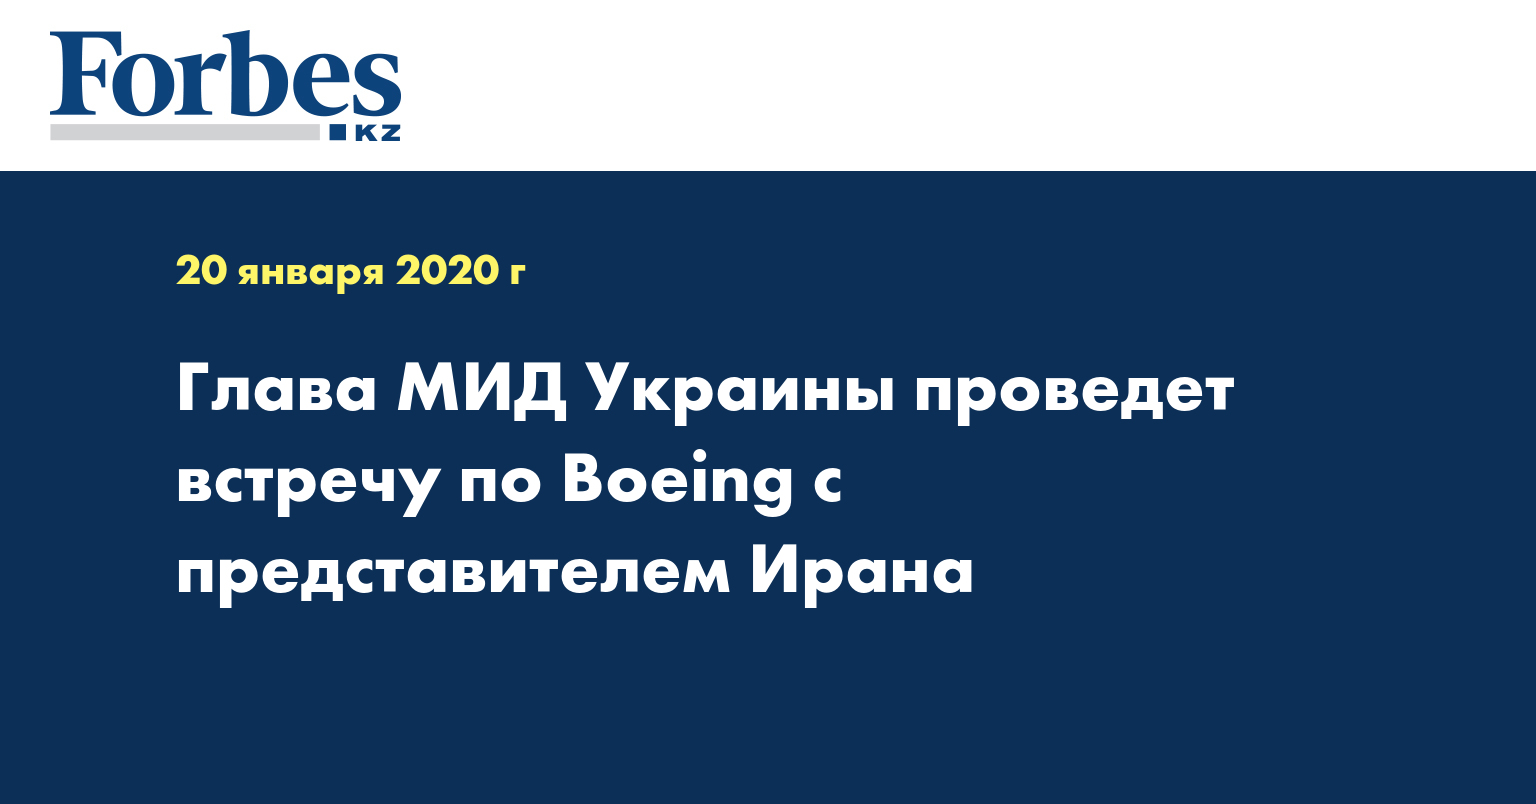 Глава МИД Украины проведет встречу по Boeing с представителем Ирана